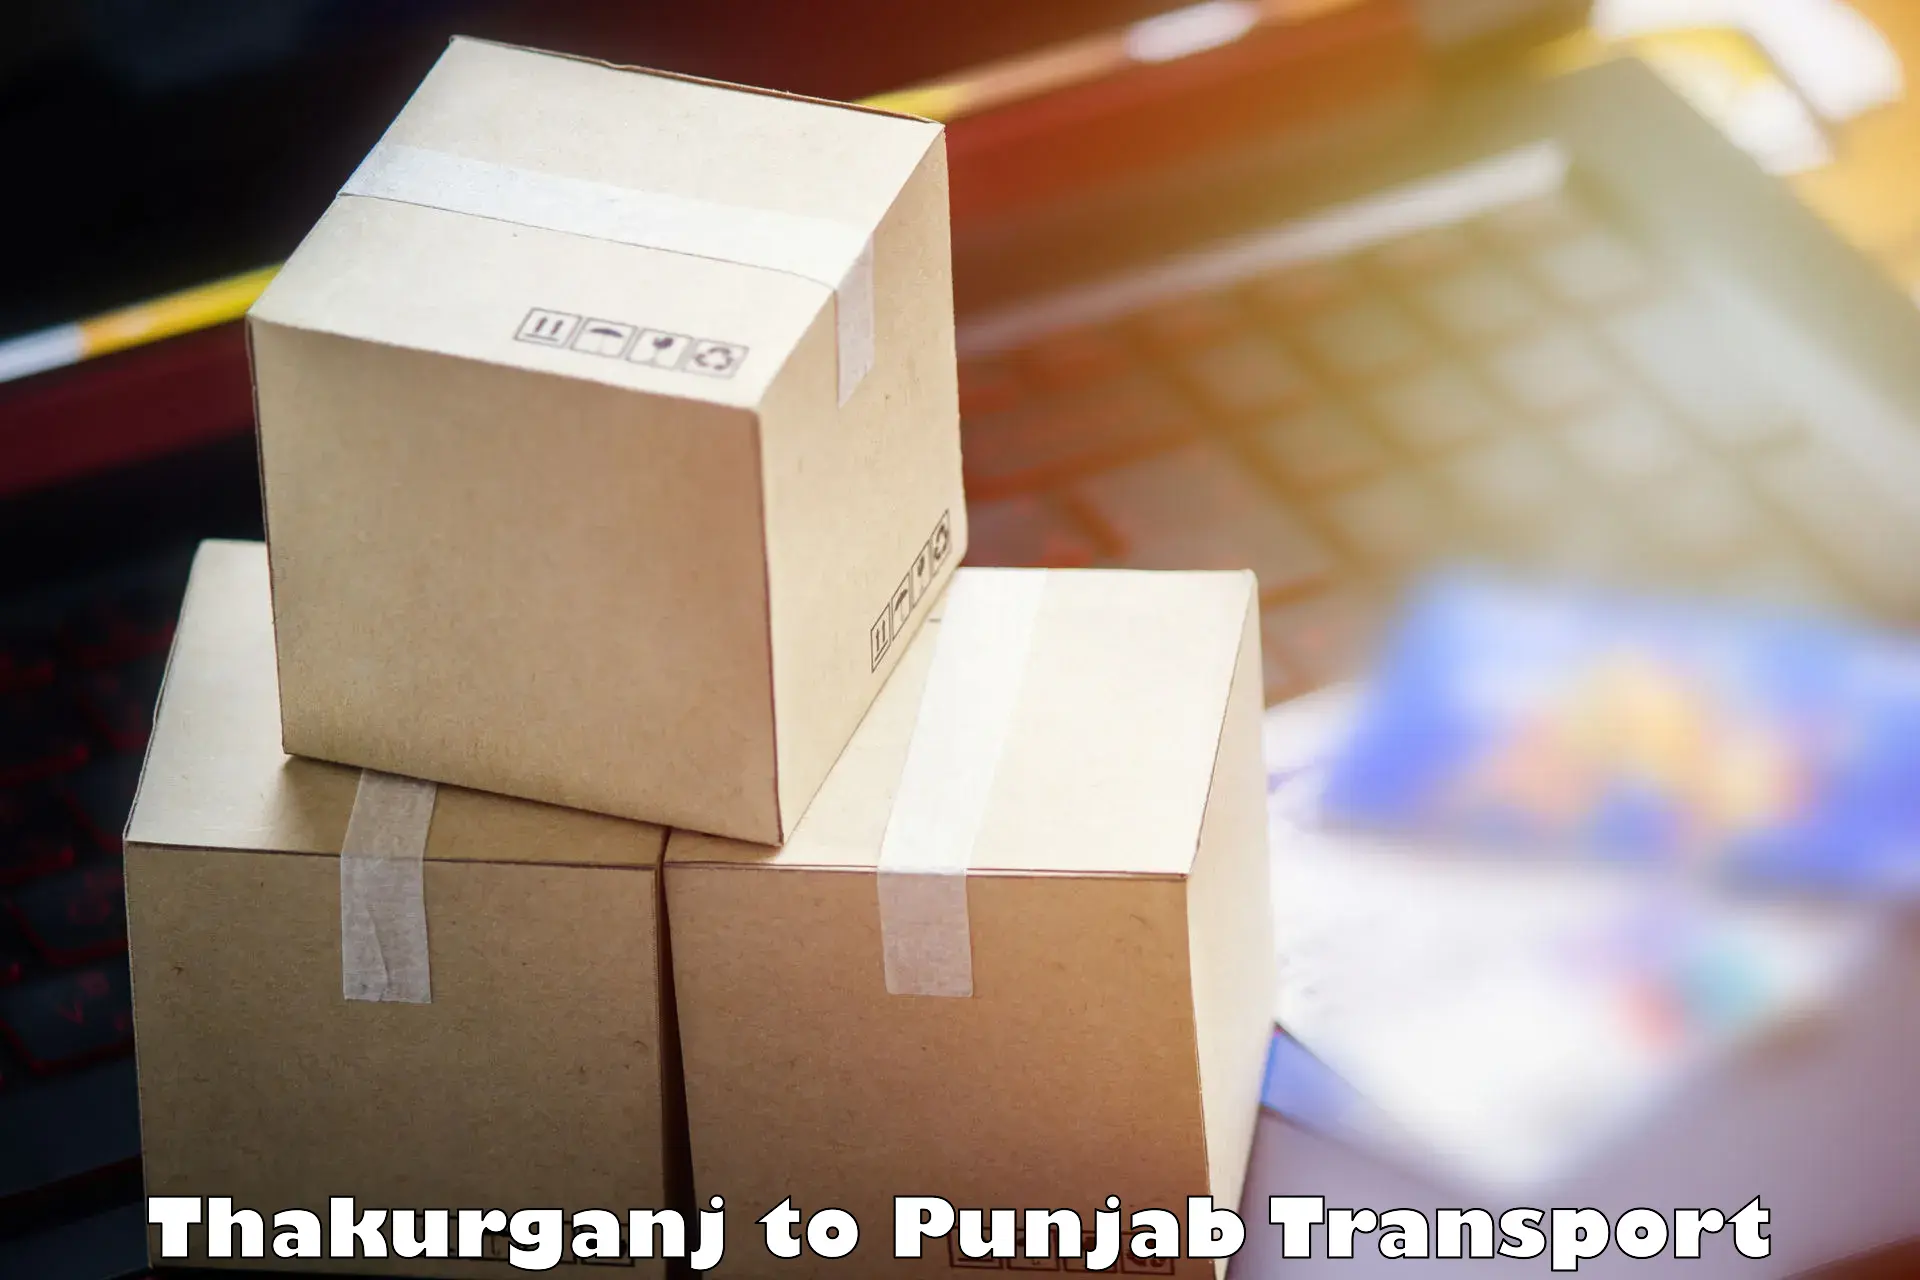 Interstate transport services Thakurganj to Punjab